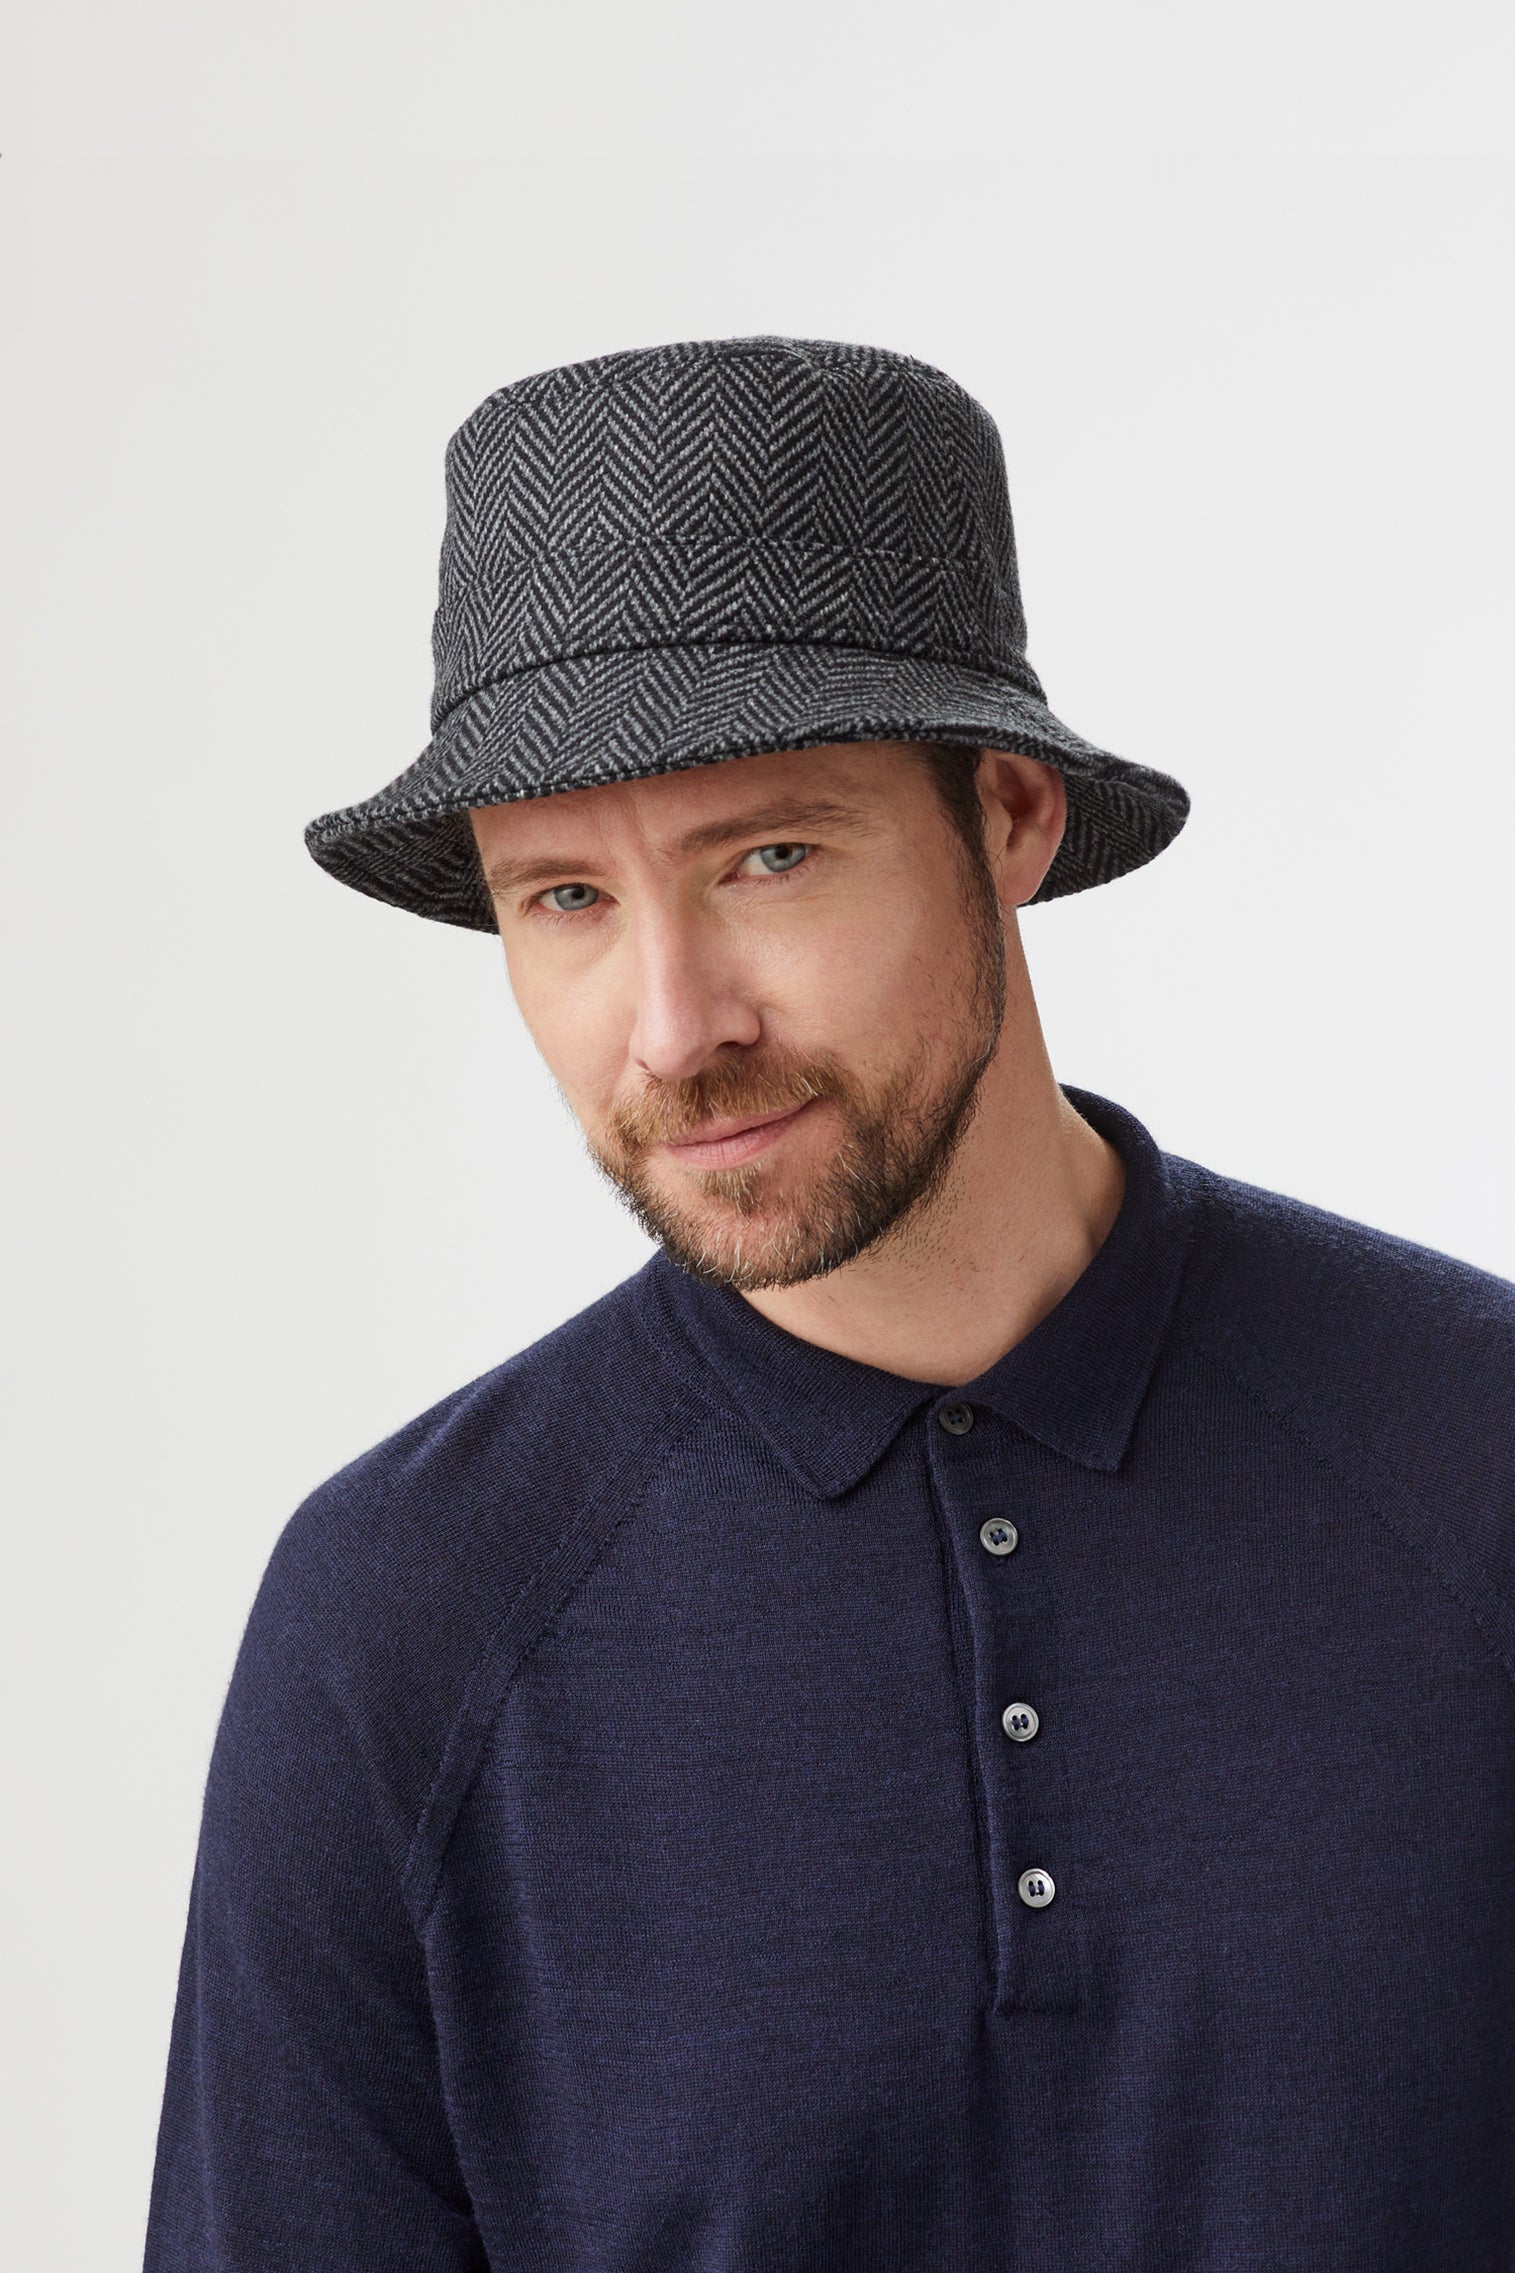 Escorial Wool Bucket Hat - All Ready to Wear - Lock & Co. Hatters London UK